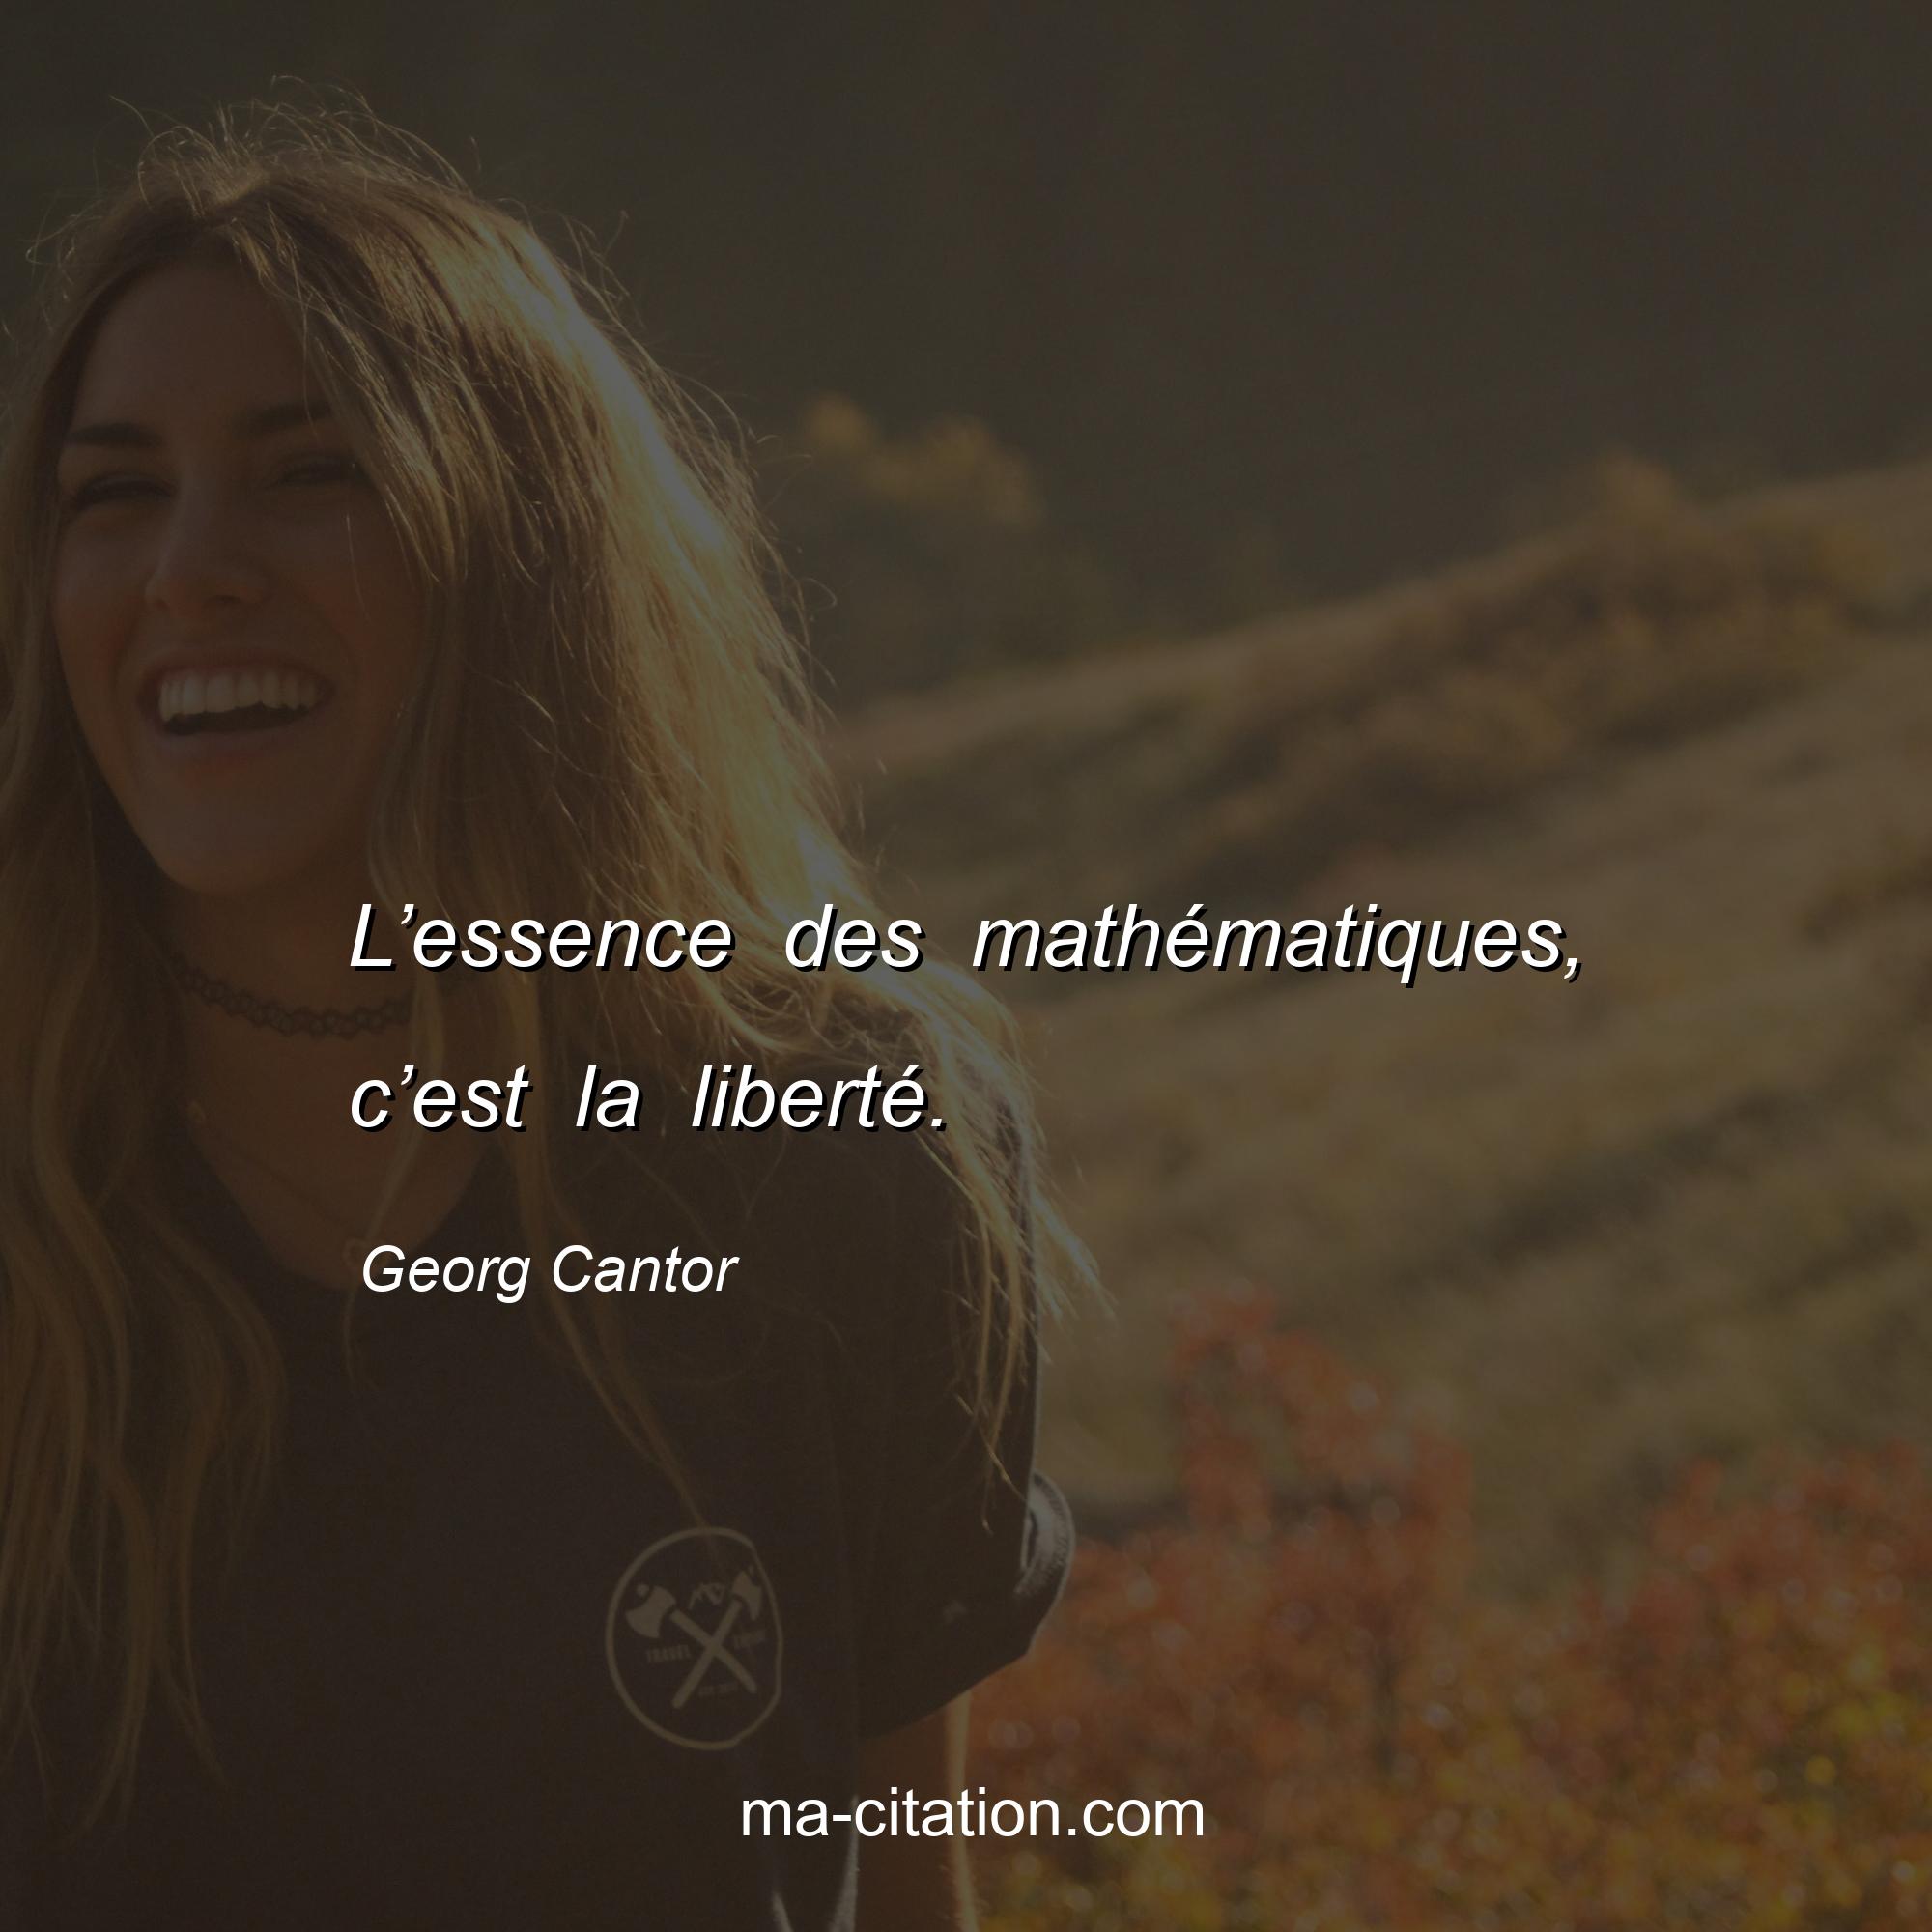 Georg Cantor : L’essence des mathématiques, c’est la liberté.